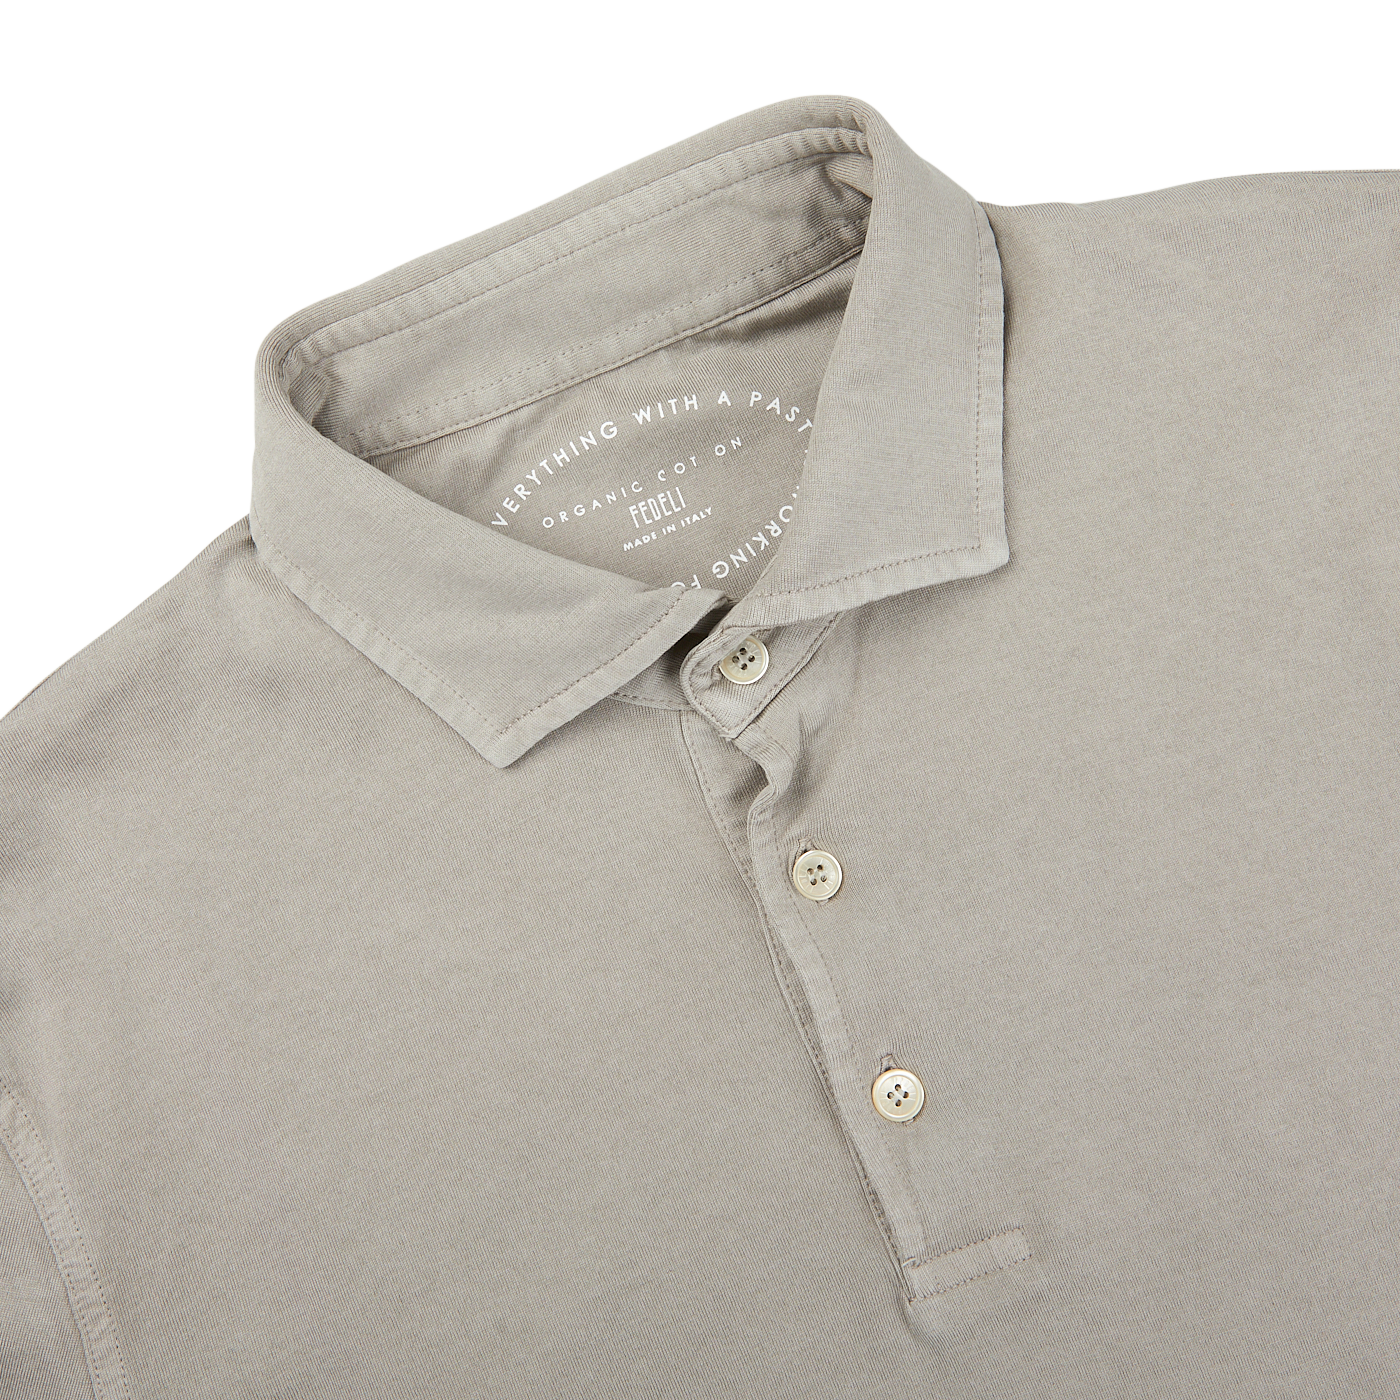 The men's luxury Fedeli Giza cotton polo shirt.